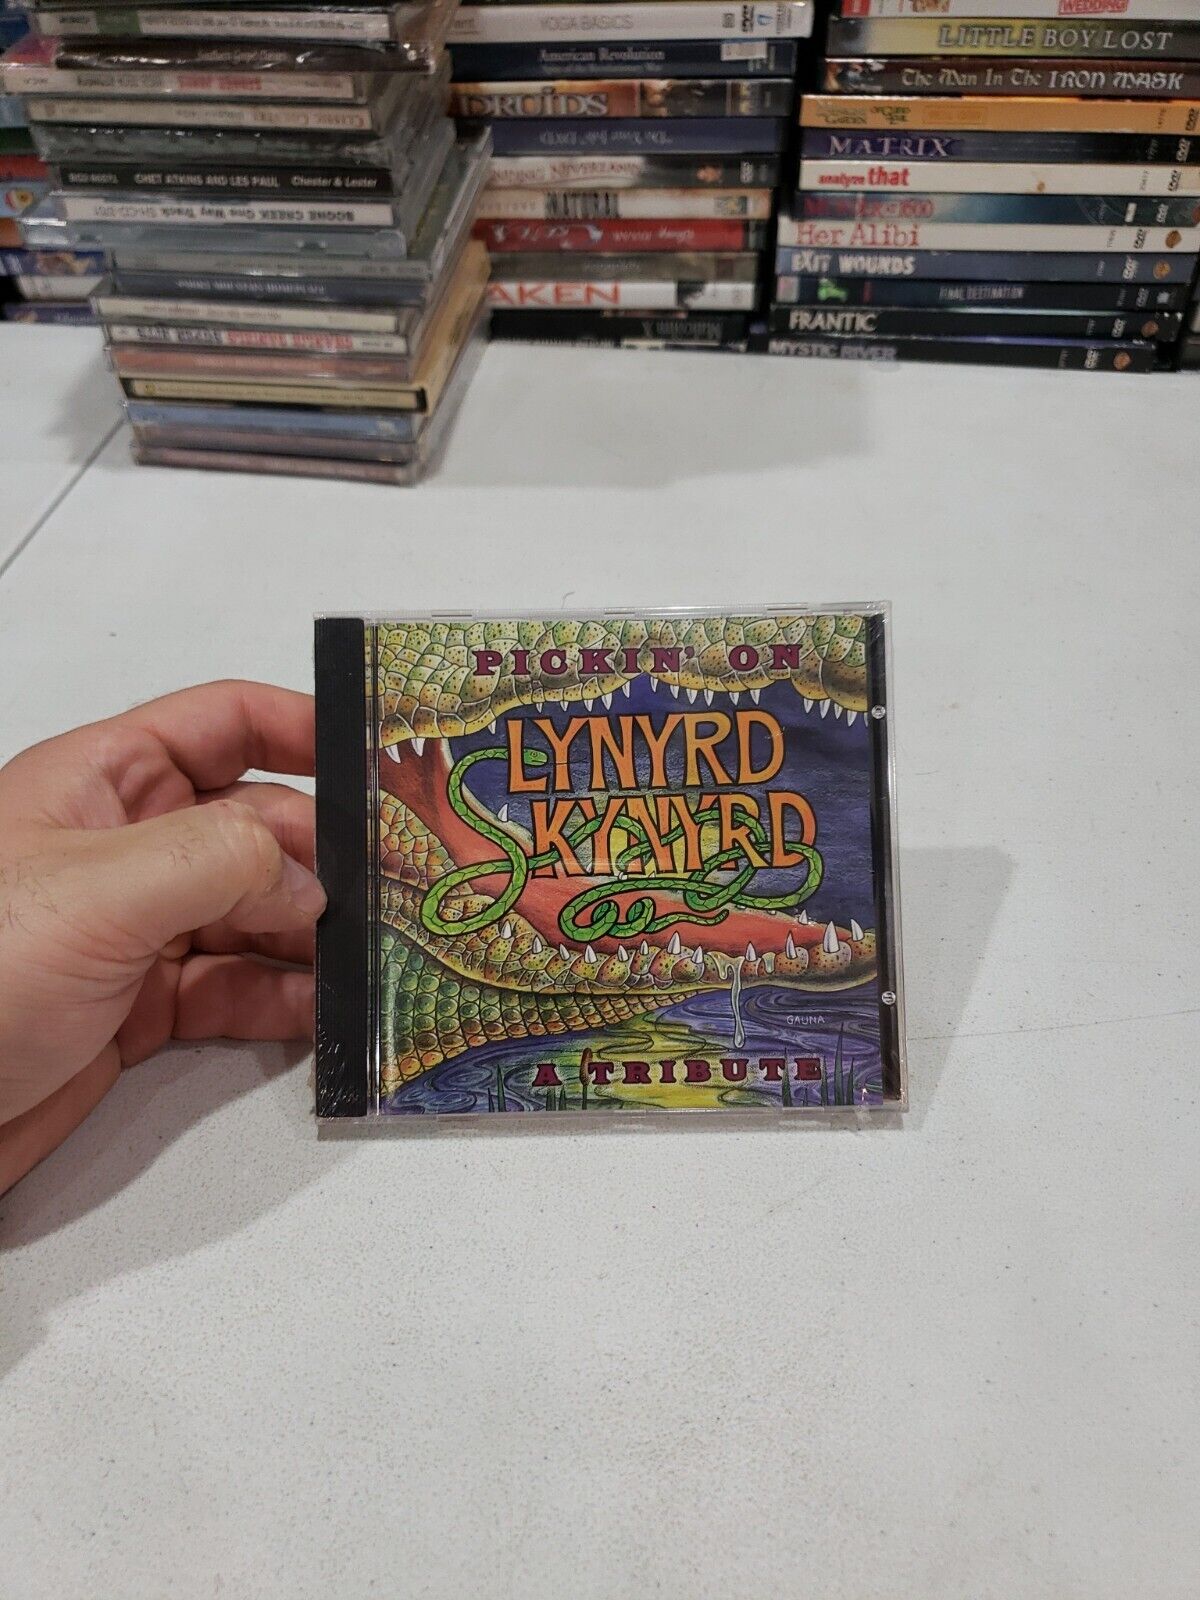 Pickin On Lynyrd Skynyrd by Various Artists (CD, 1998 🇺🇲 BUY 2 GET 1 FREE 🌎 P